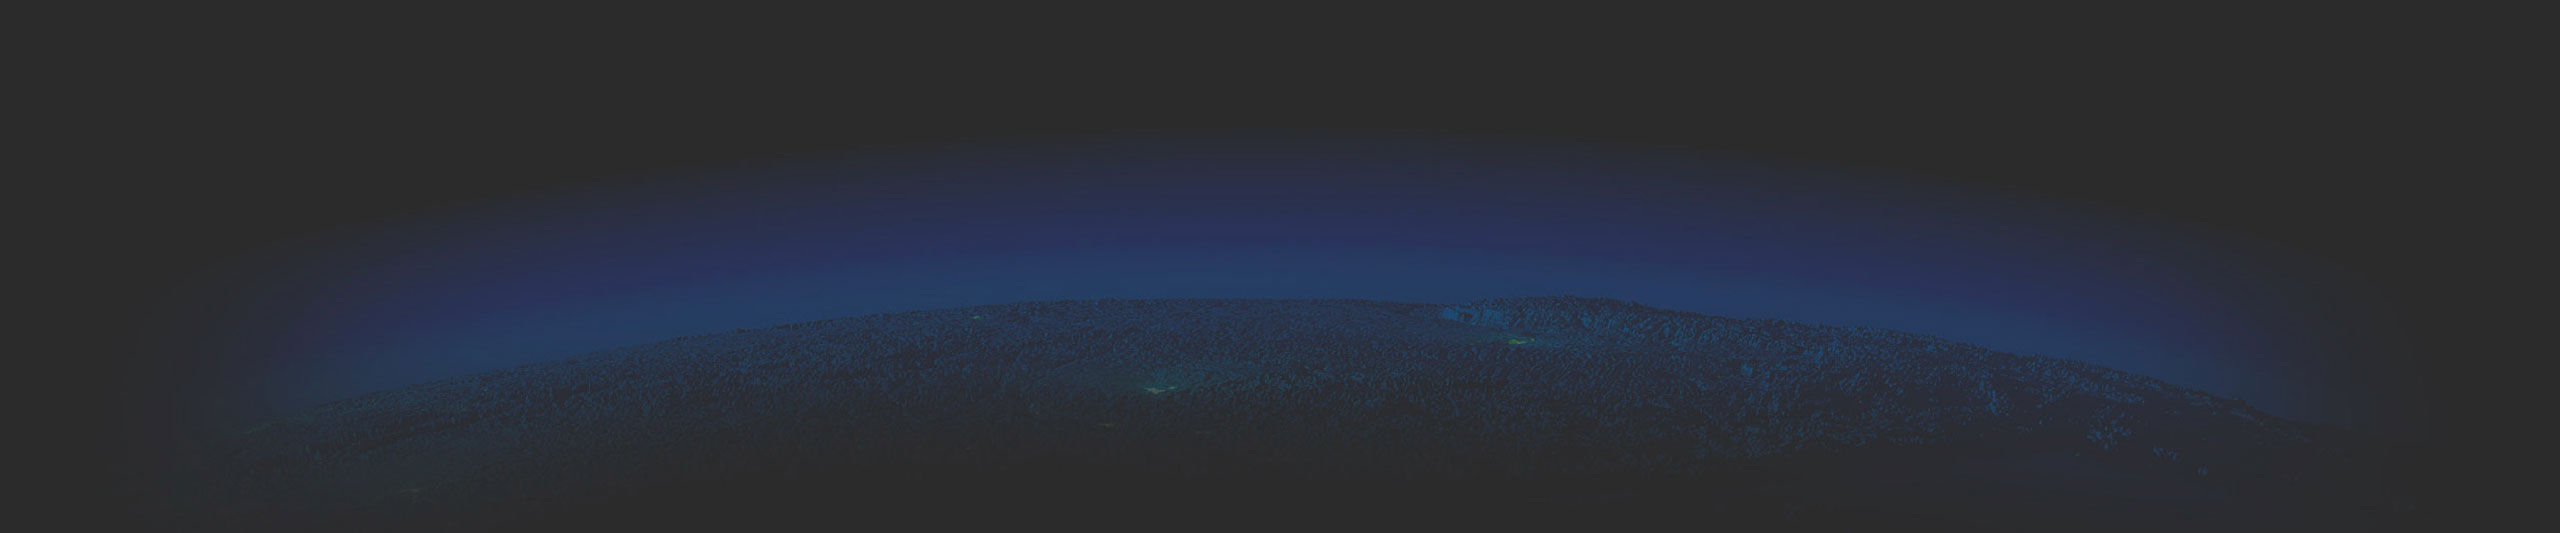 Ein großes, grünes Feld mit Reihen von silberfarbenen, rechteckigen Solarkollektoren